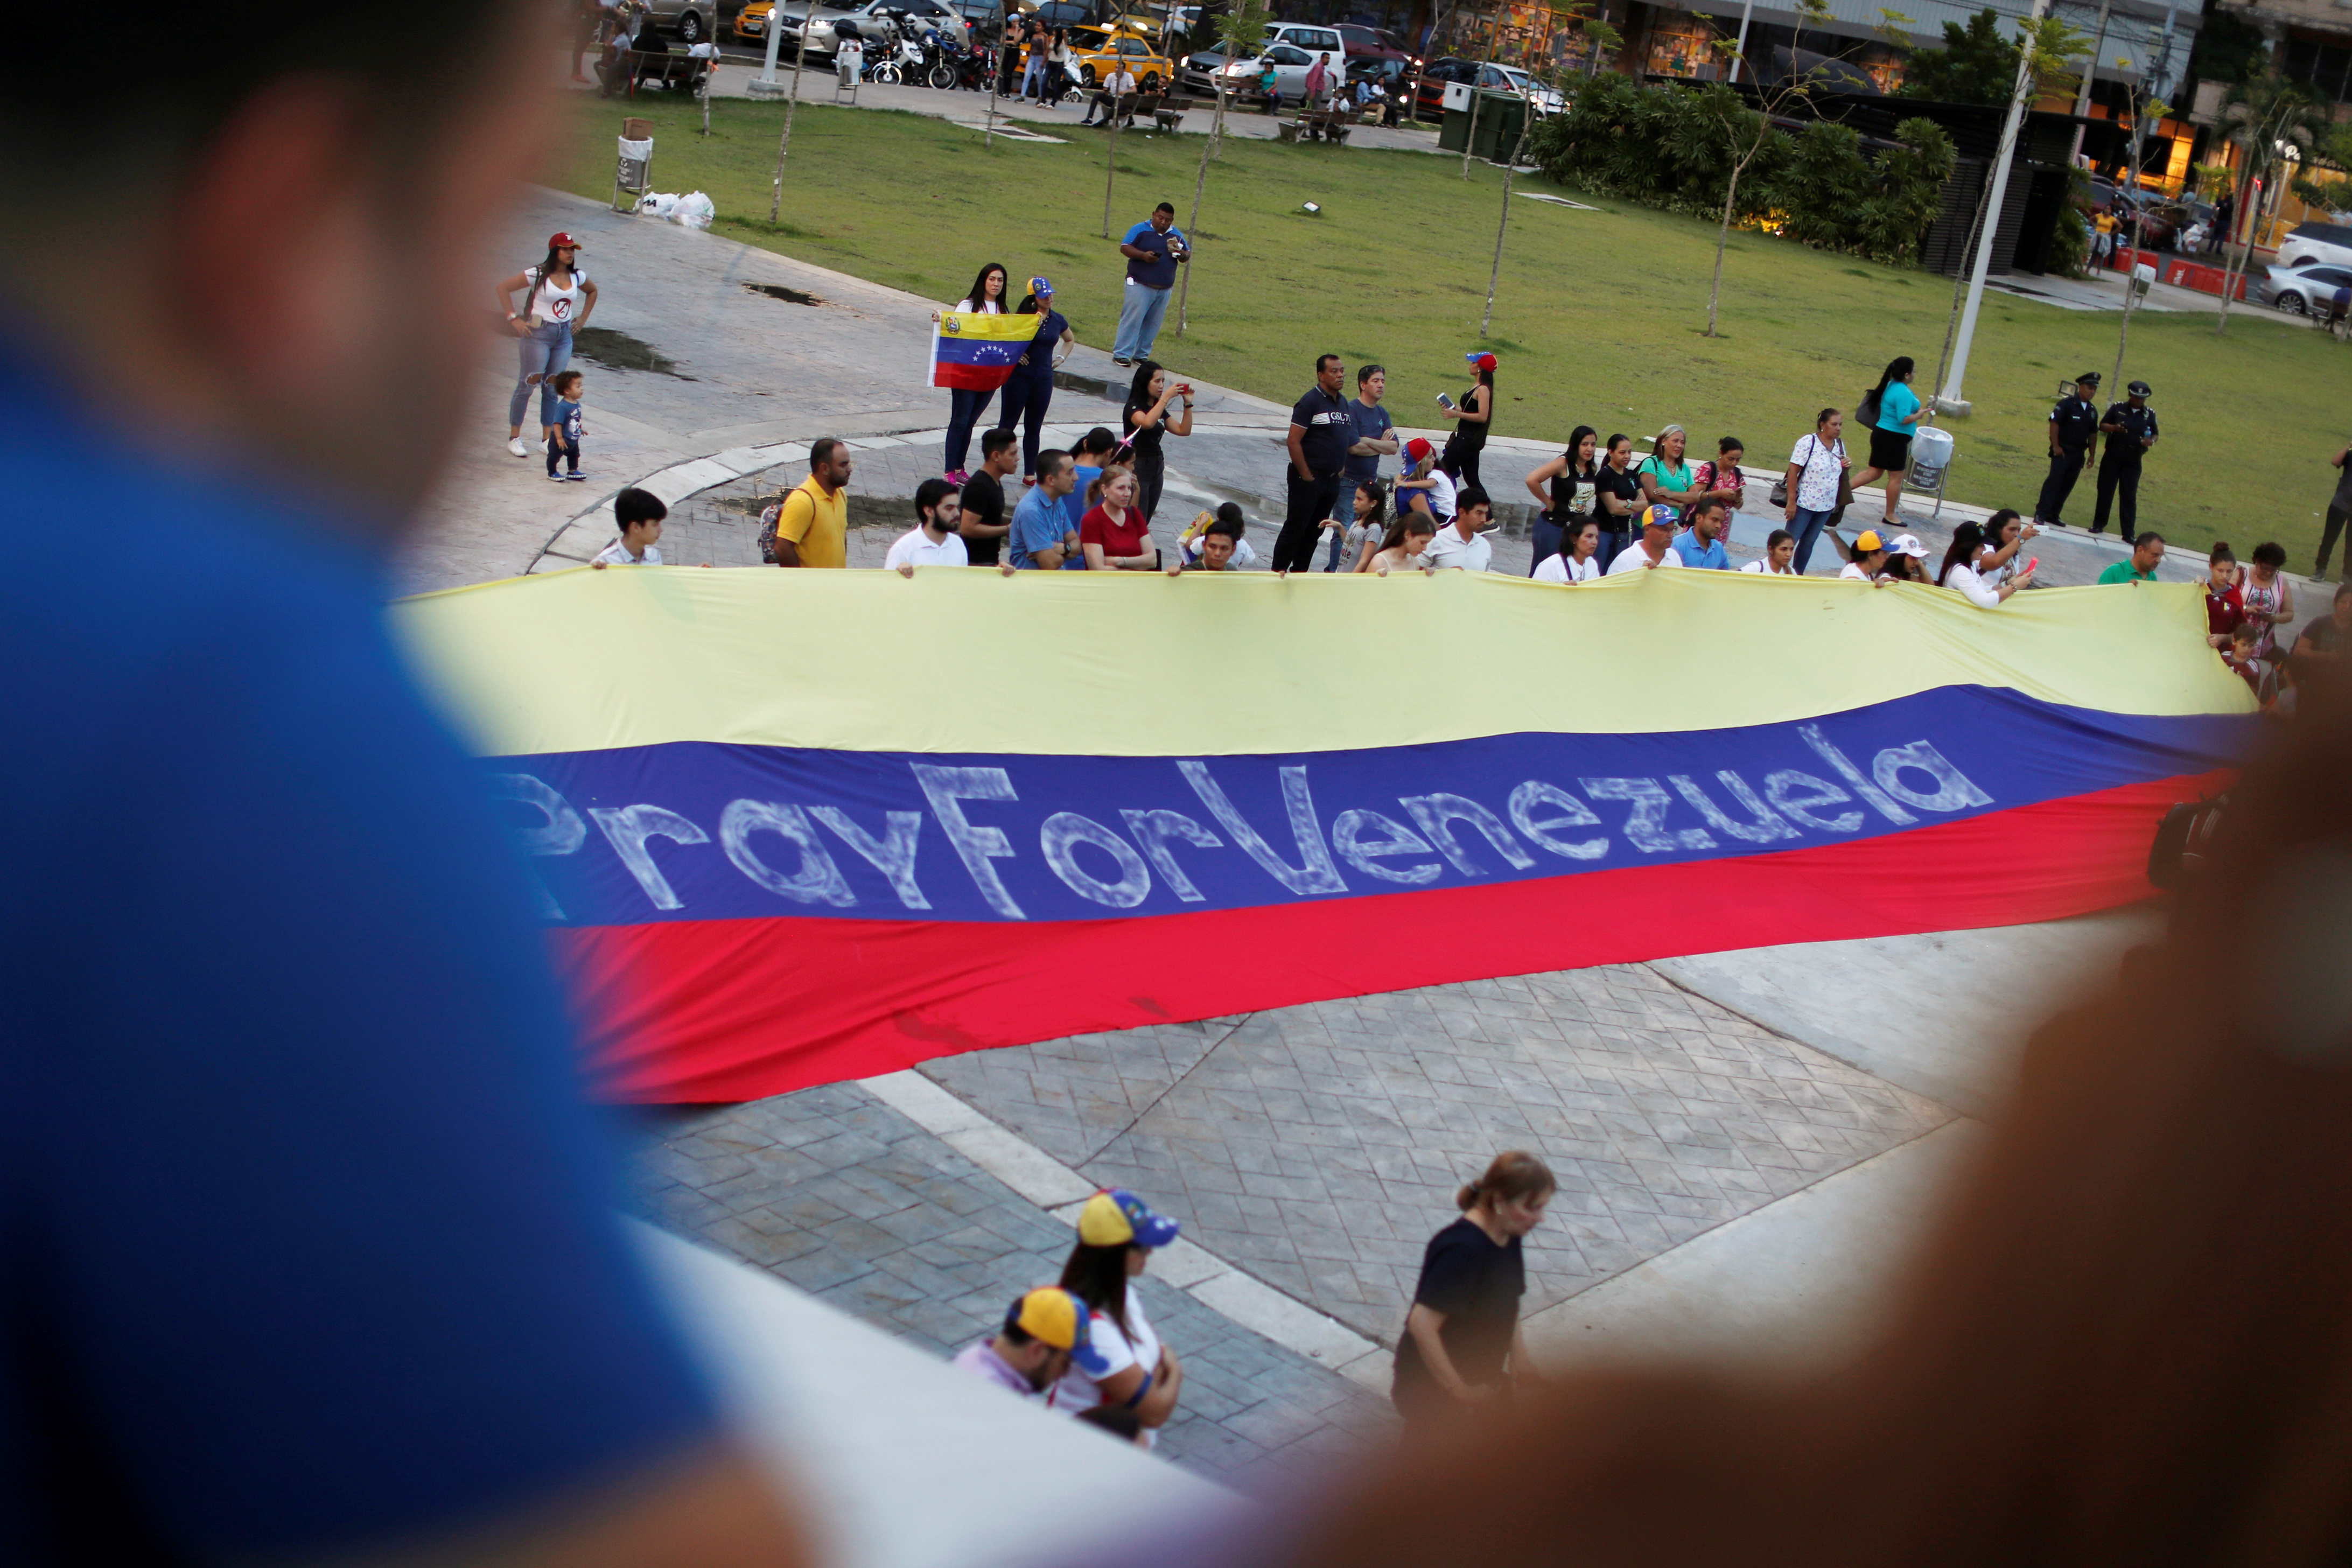 “Un dólar por un paisano legal”, la campaña para legalizar a venezolanos en Panamá